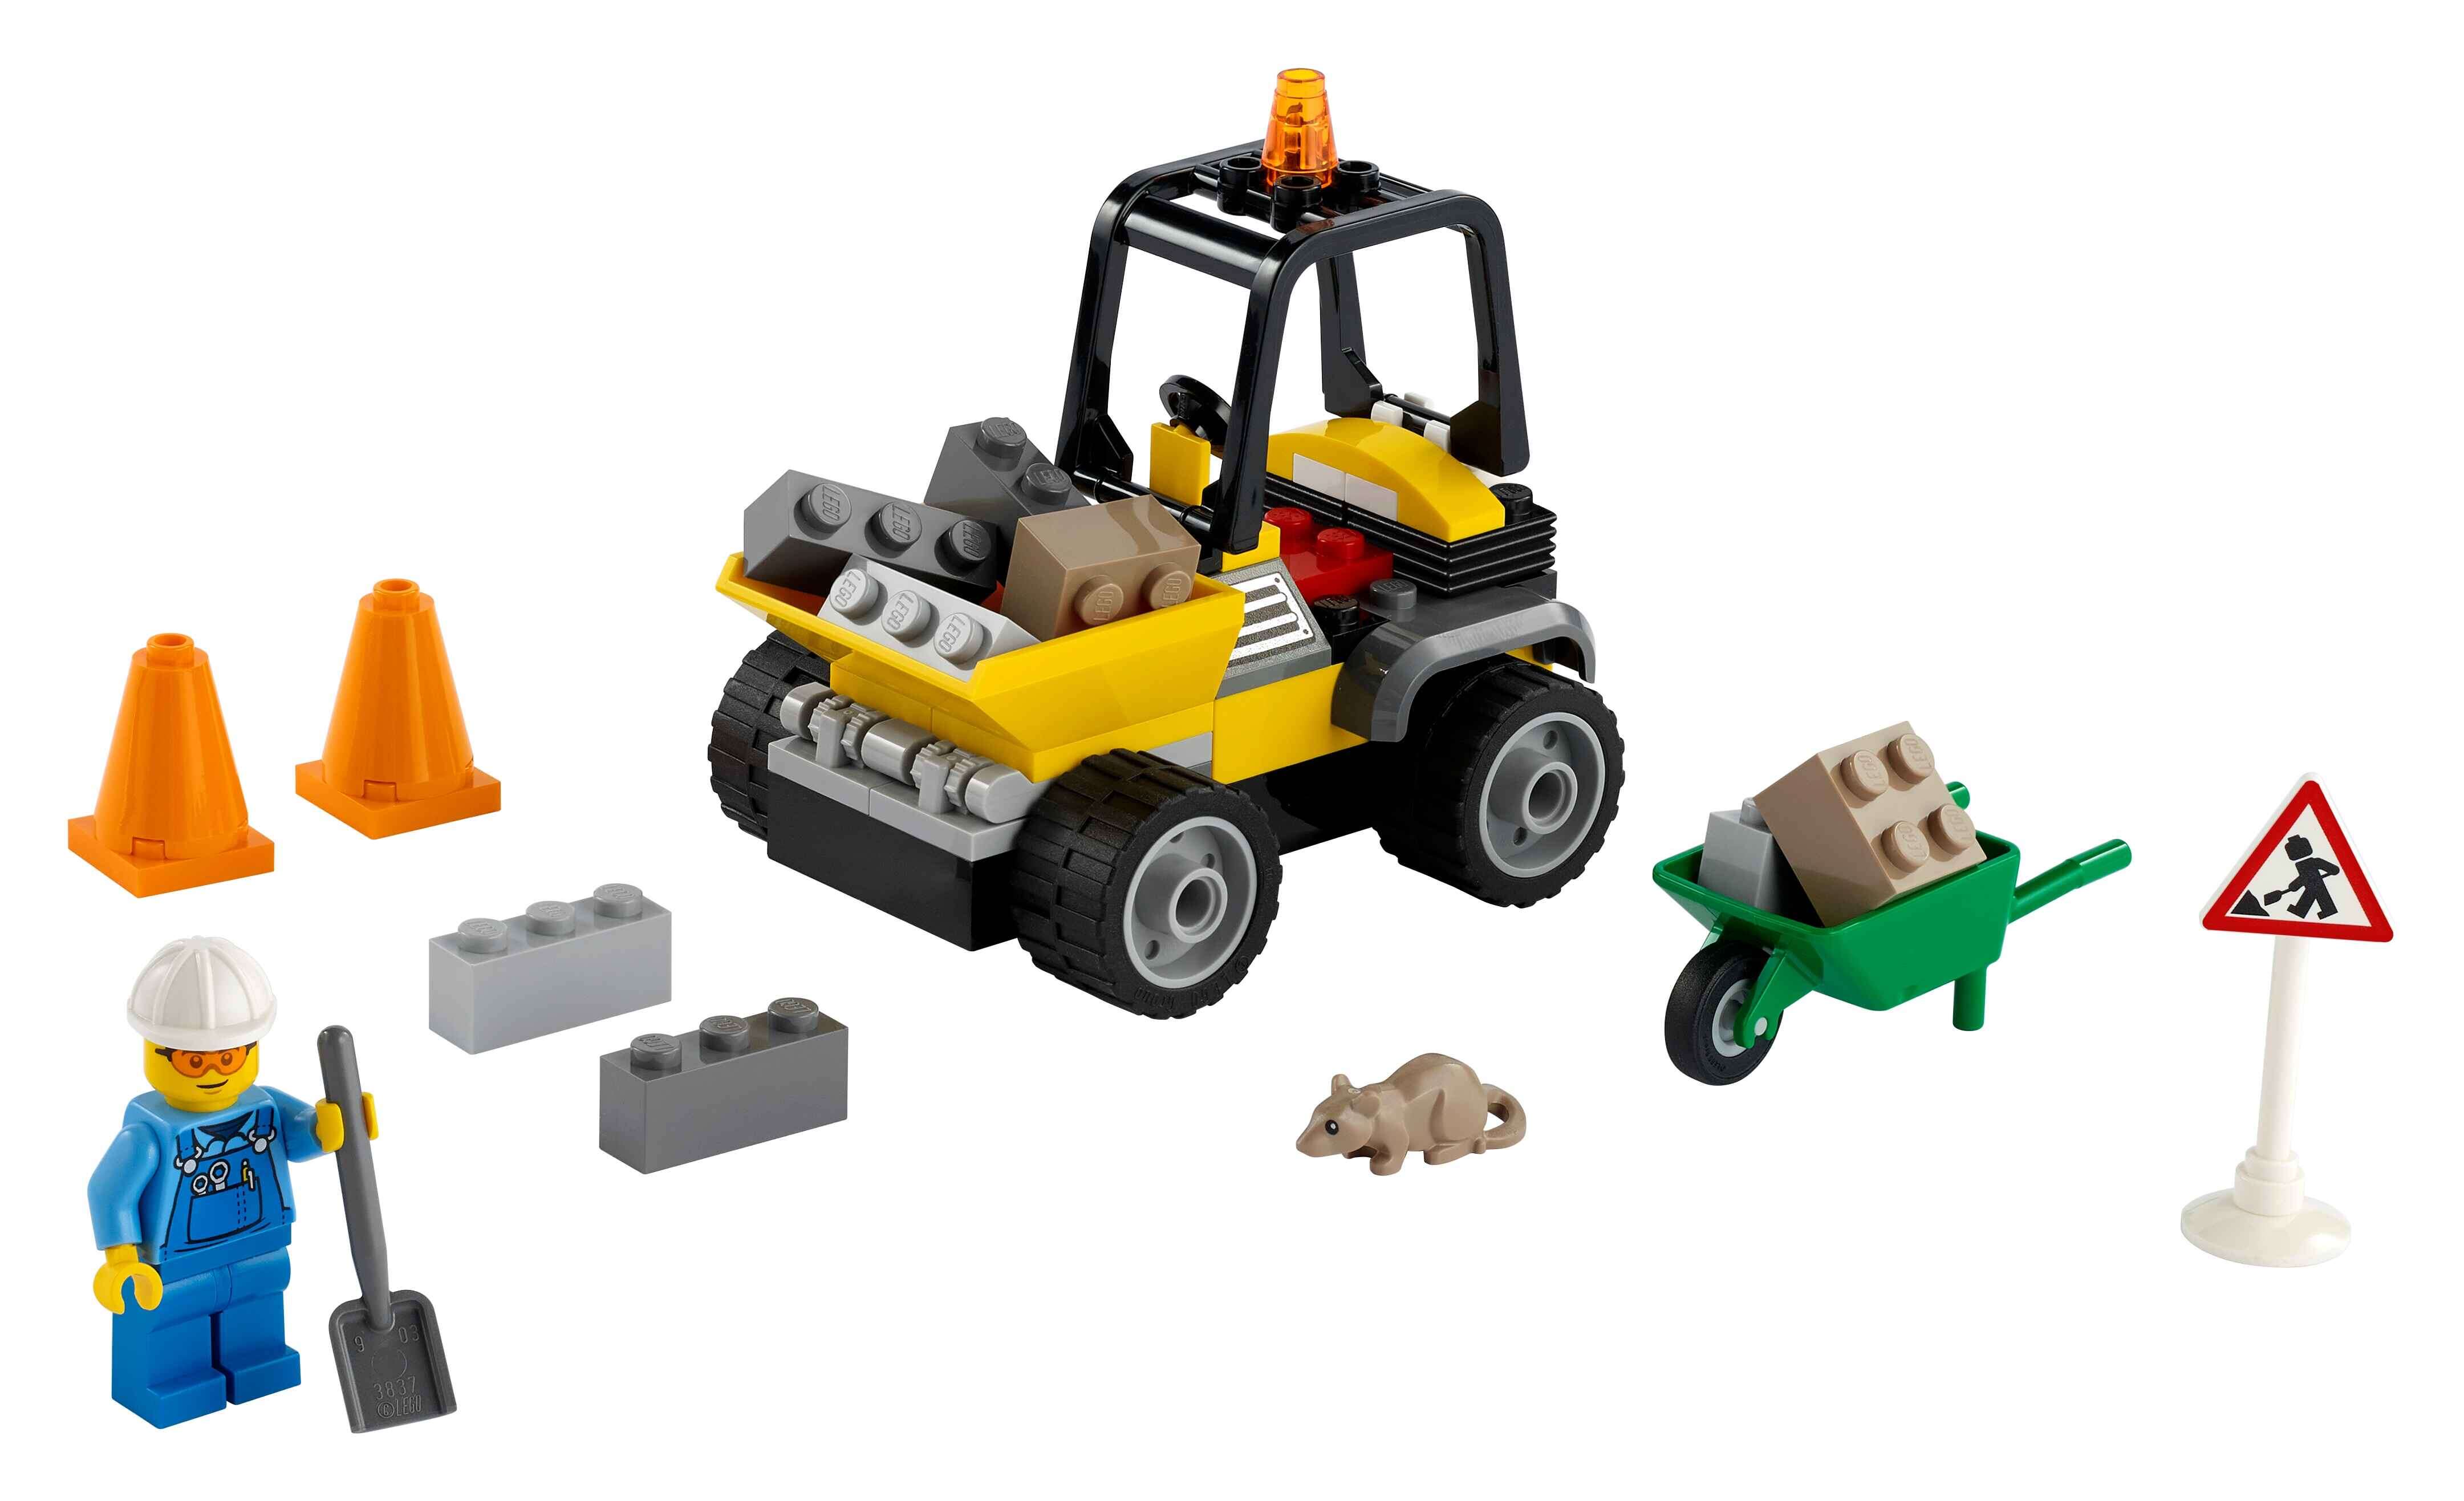 LEGO 60284 City Baustellen-LKW, Straßenarbeiter-Minifigur, Ratte